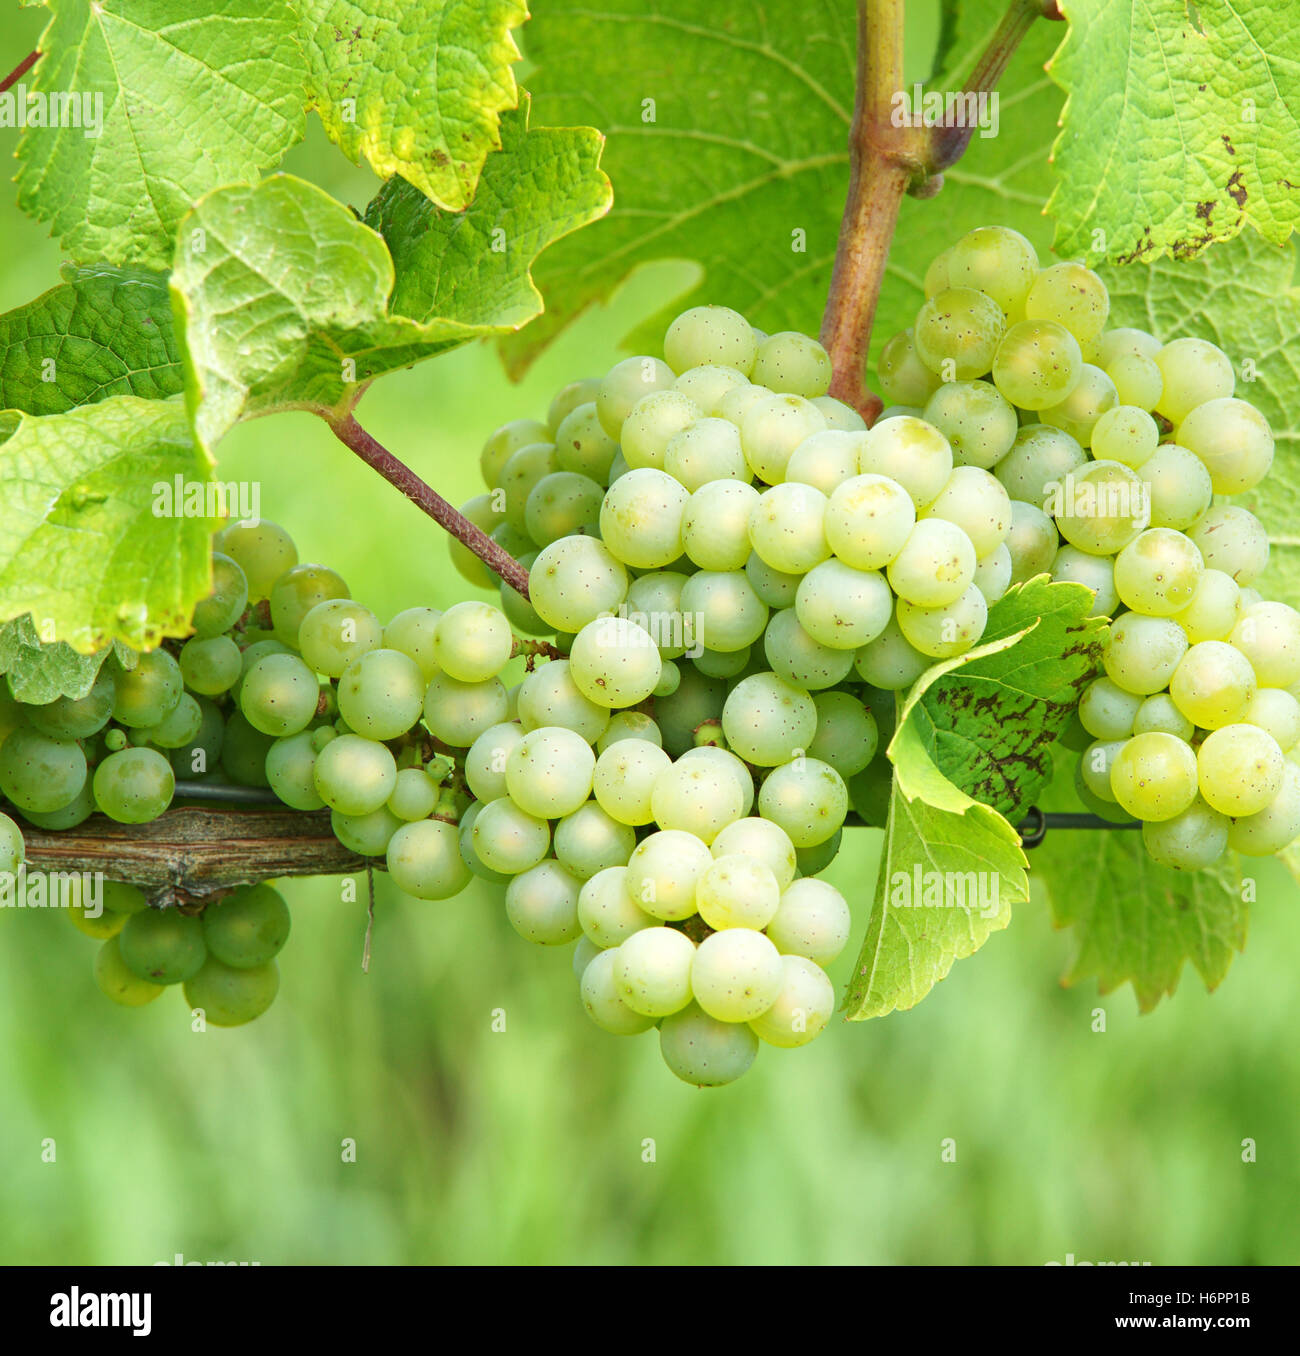 Виноград вино 7 букв